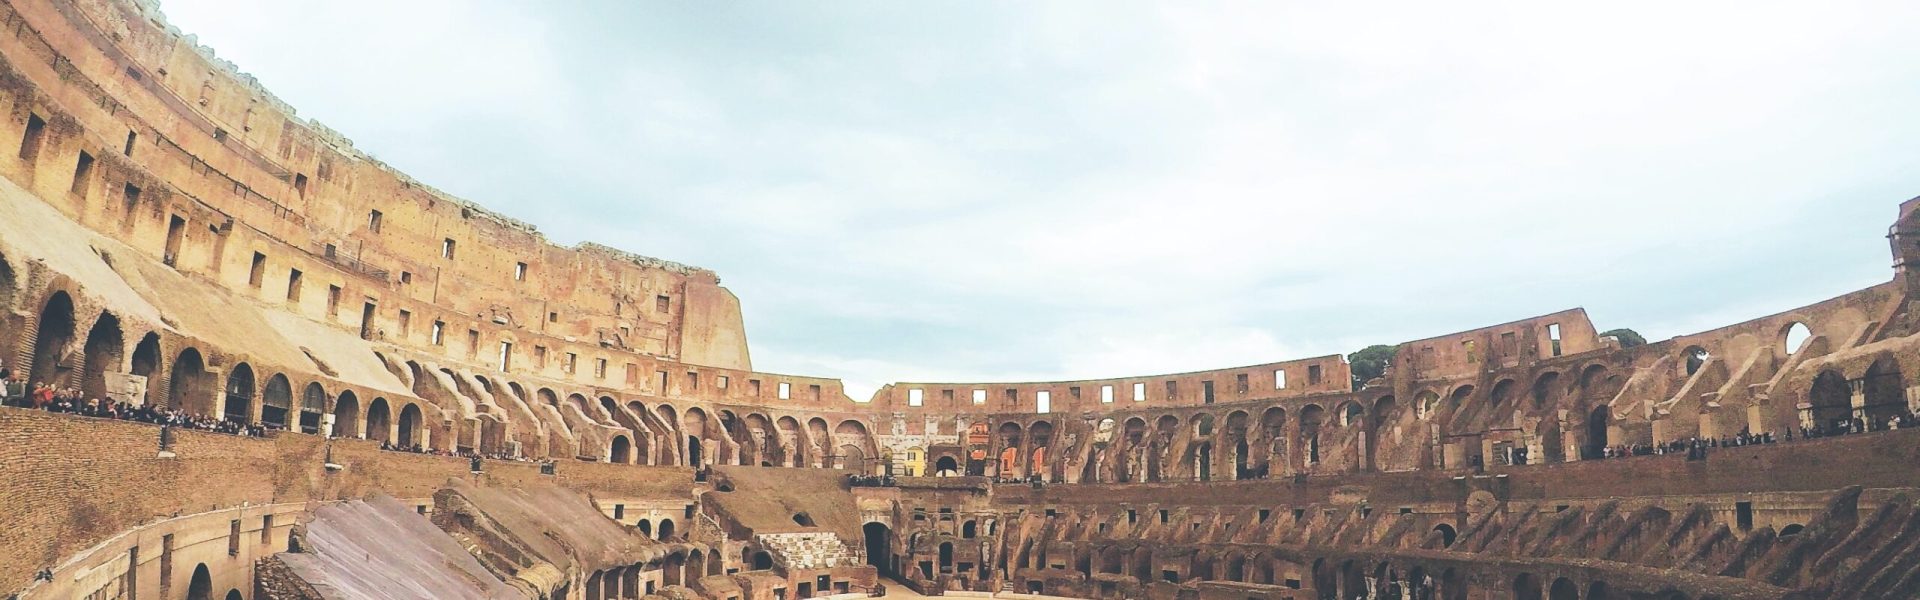 Coliseo romano estrena ascensor para llevar a sus visitantes a las alturas